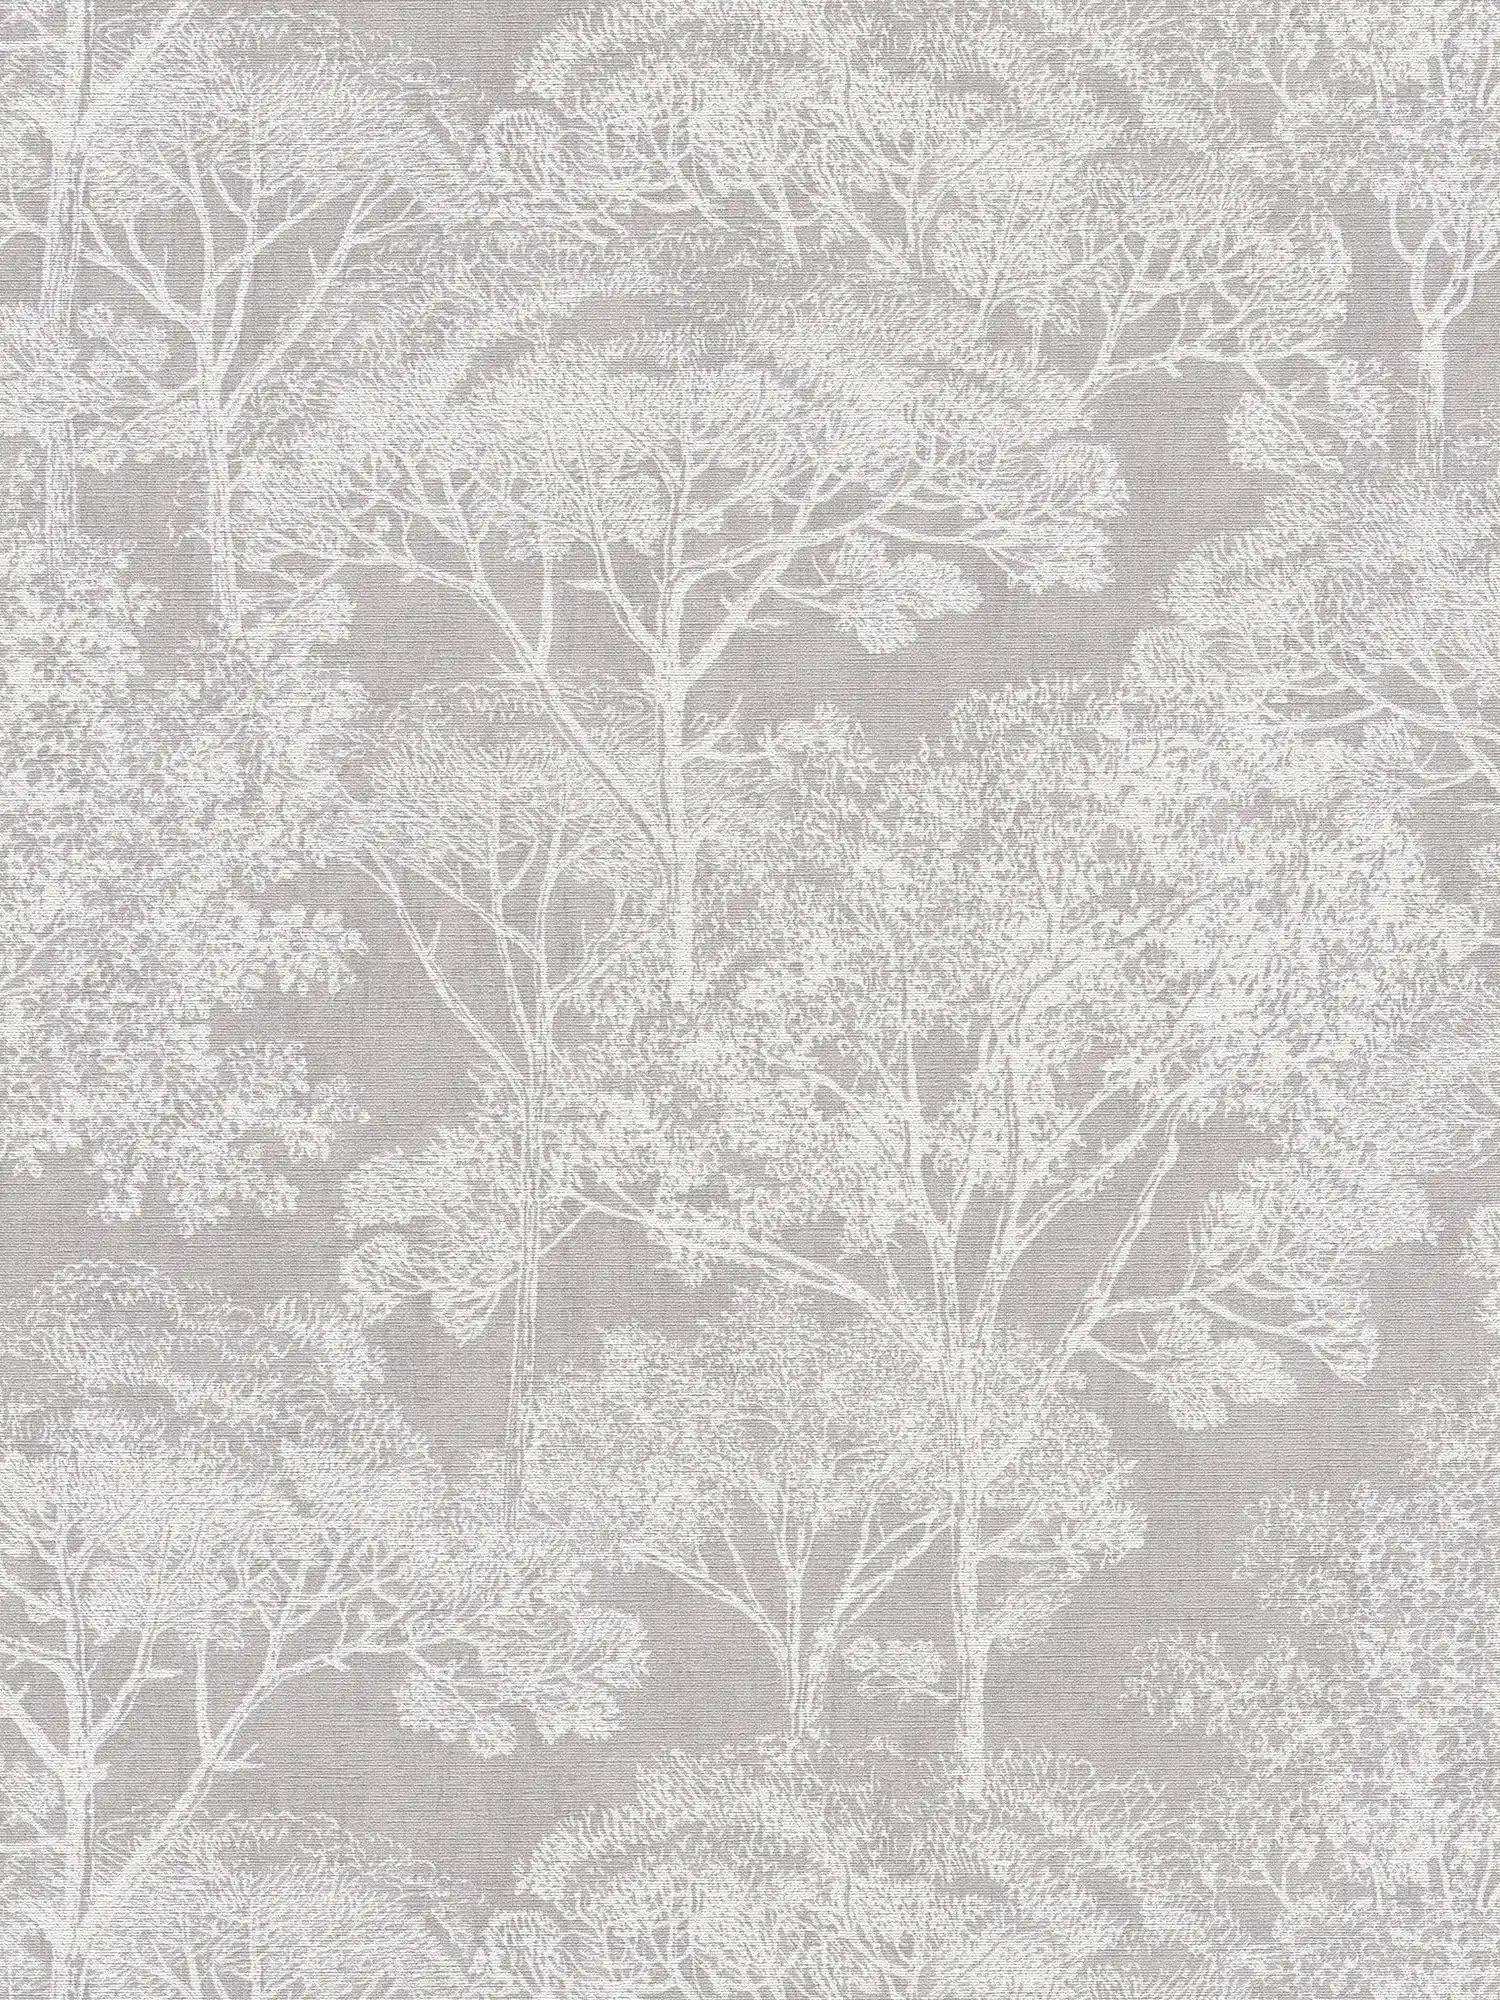 Papel pintado vintage con motivo de árbol con efecto metálico - crema, gris, metálico
